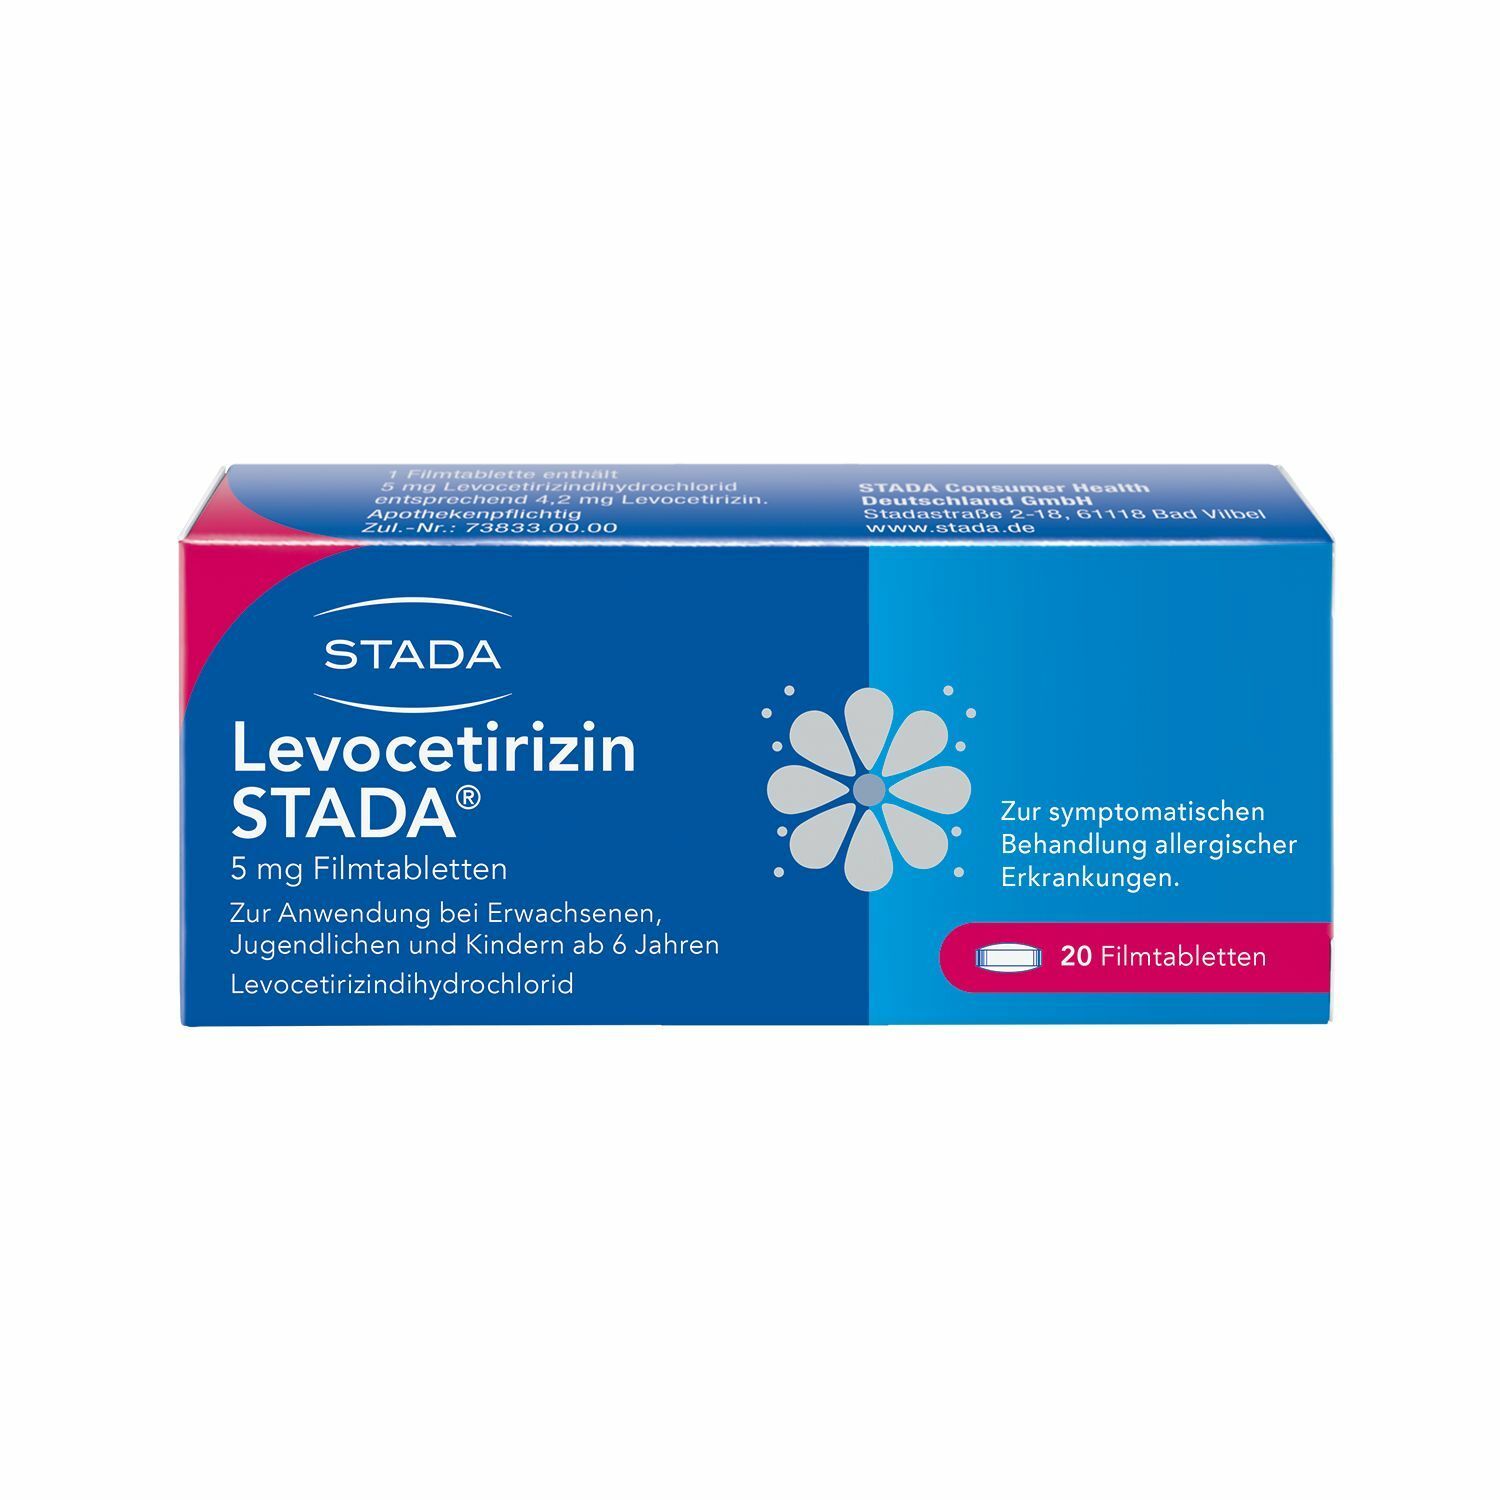 Levocetirizin Stada® 5 mg, zur symptomatischen Behandlung allergischer Erkrankungen